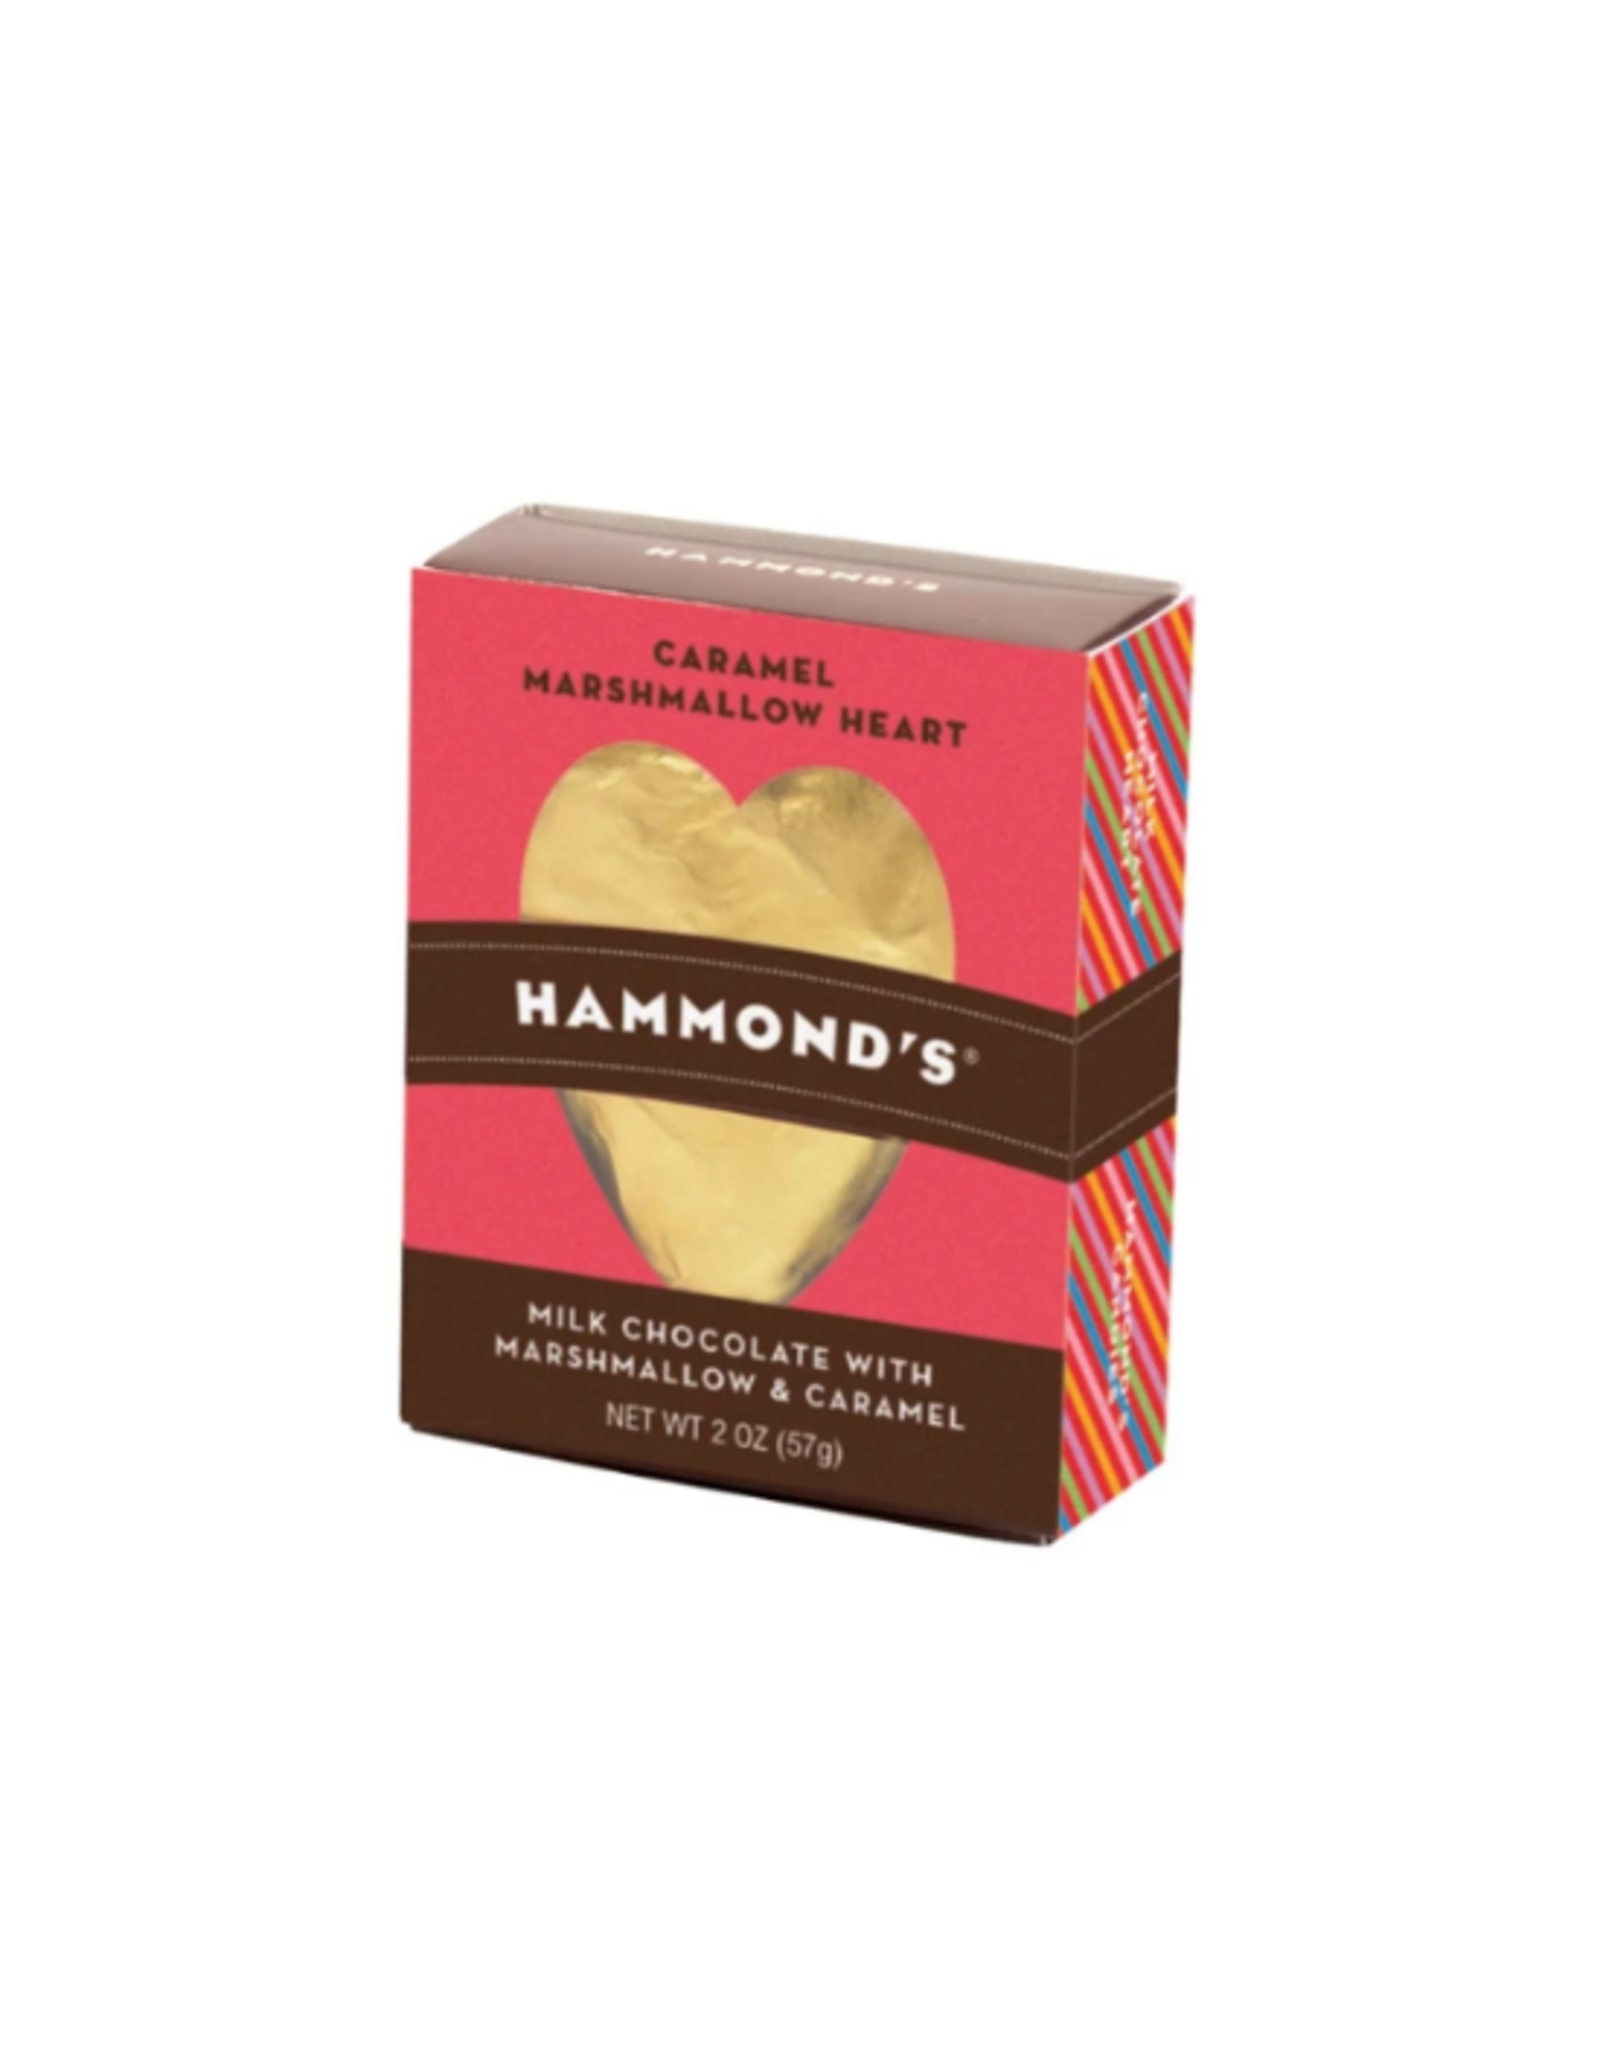 Hammond's Heart Marshmallow Caramel, single